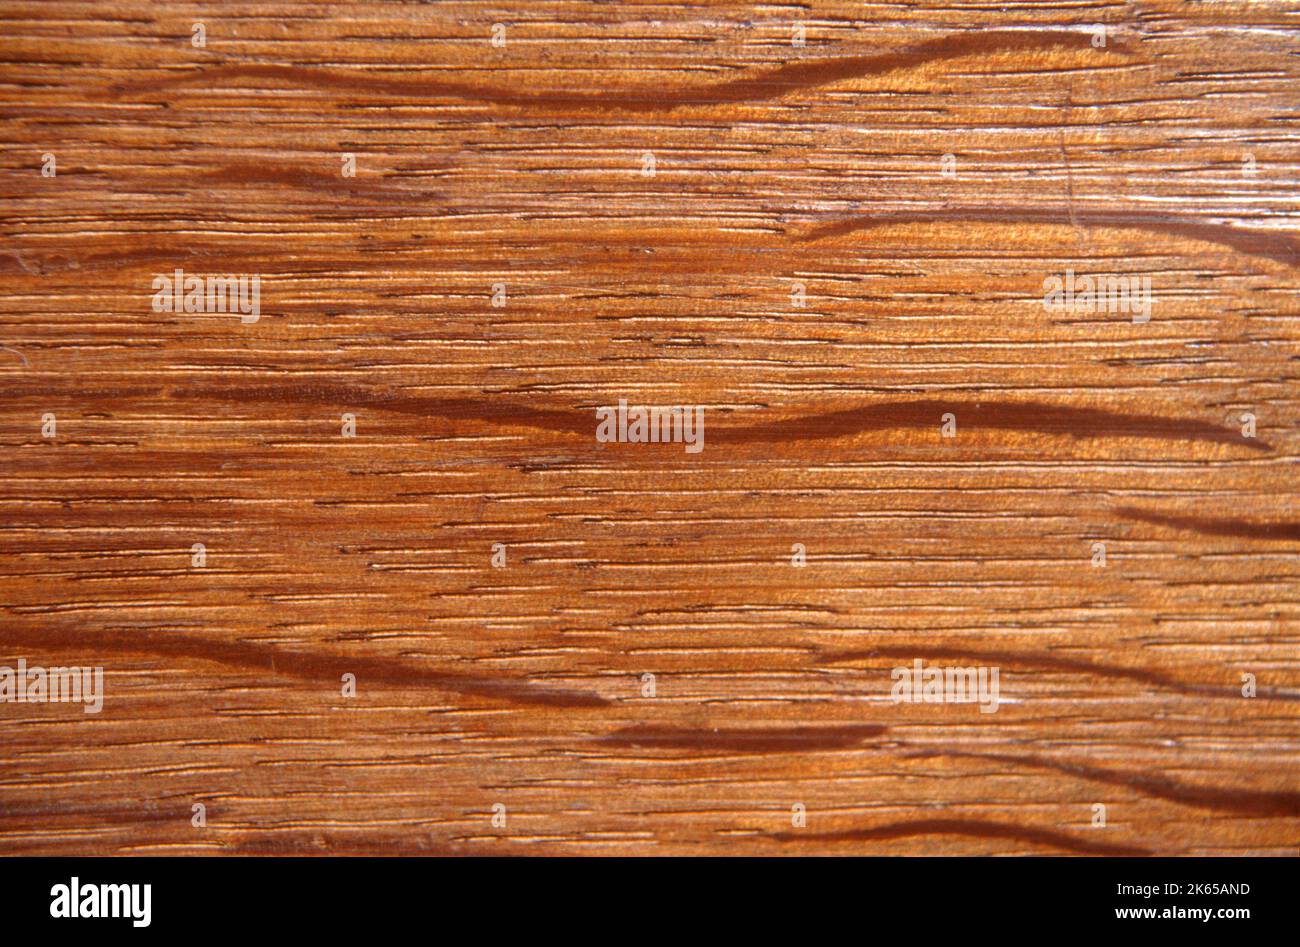 Mahogany wood grain reddish-brown timber of three tropical hardwood species of the genus Swietenia Stock Photo